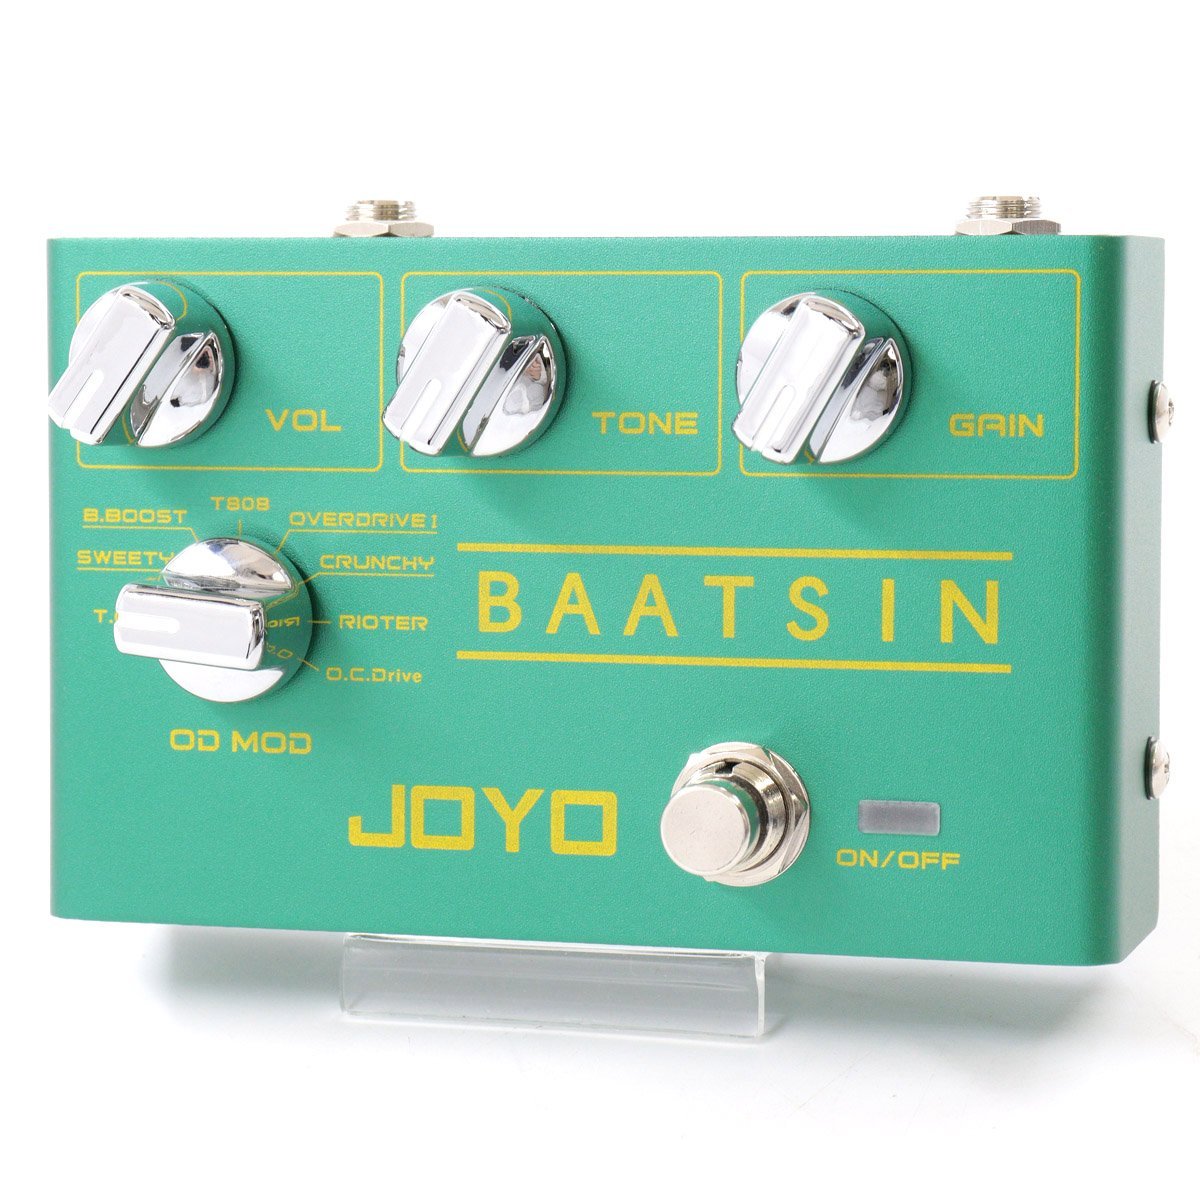 JOYO R-11 / BAATSIN ギター用 オーバードライブ 【池袋店】（中古 